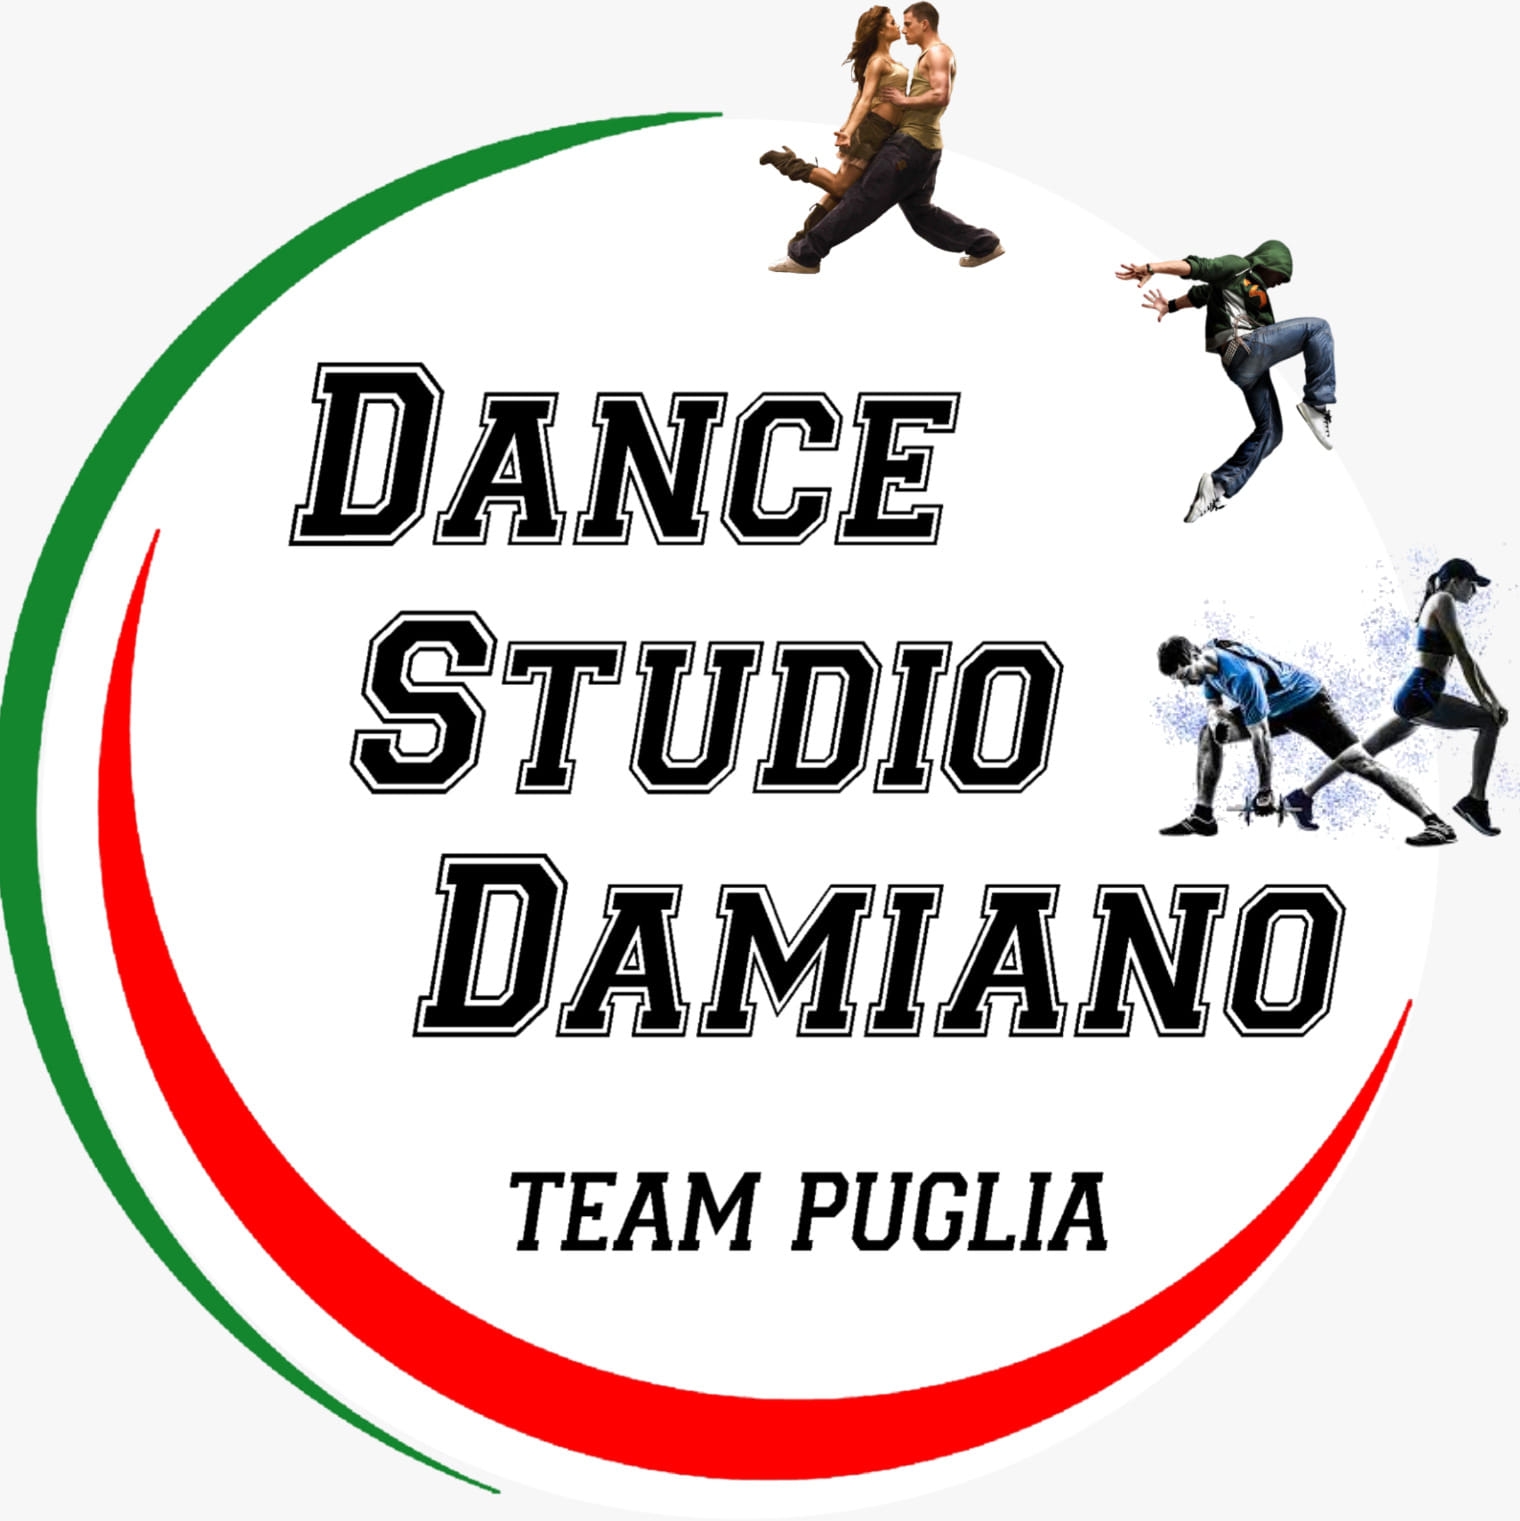 A.S.D. DANCE STUDIO DAMIANO TEAM PUGLIA